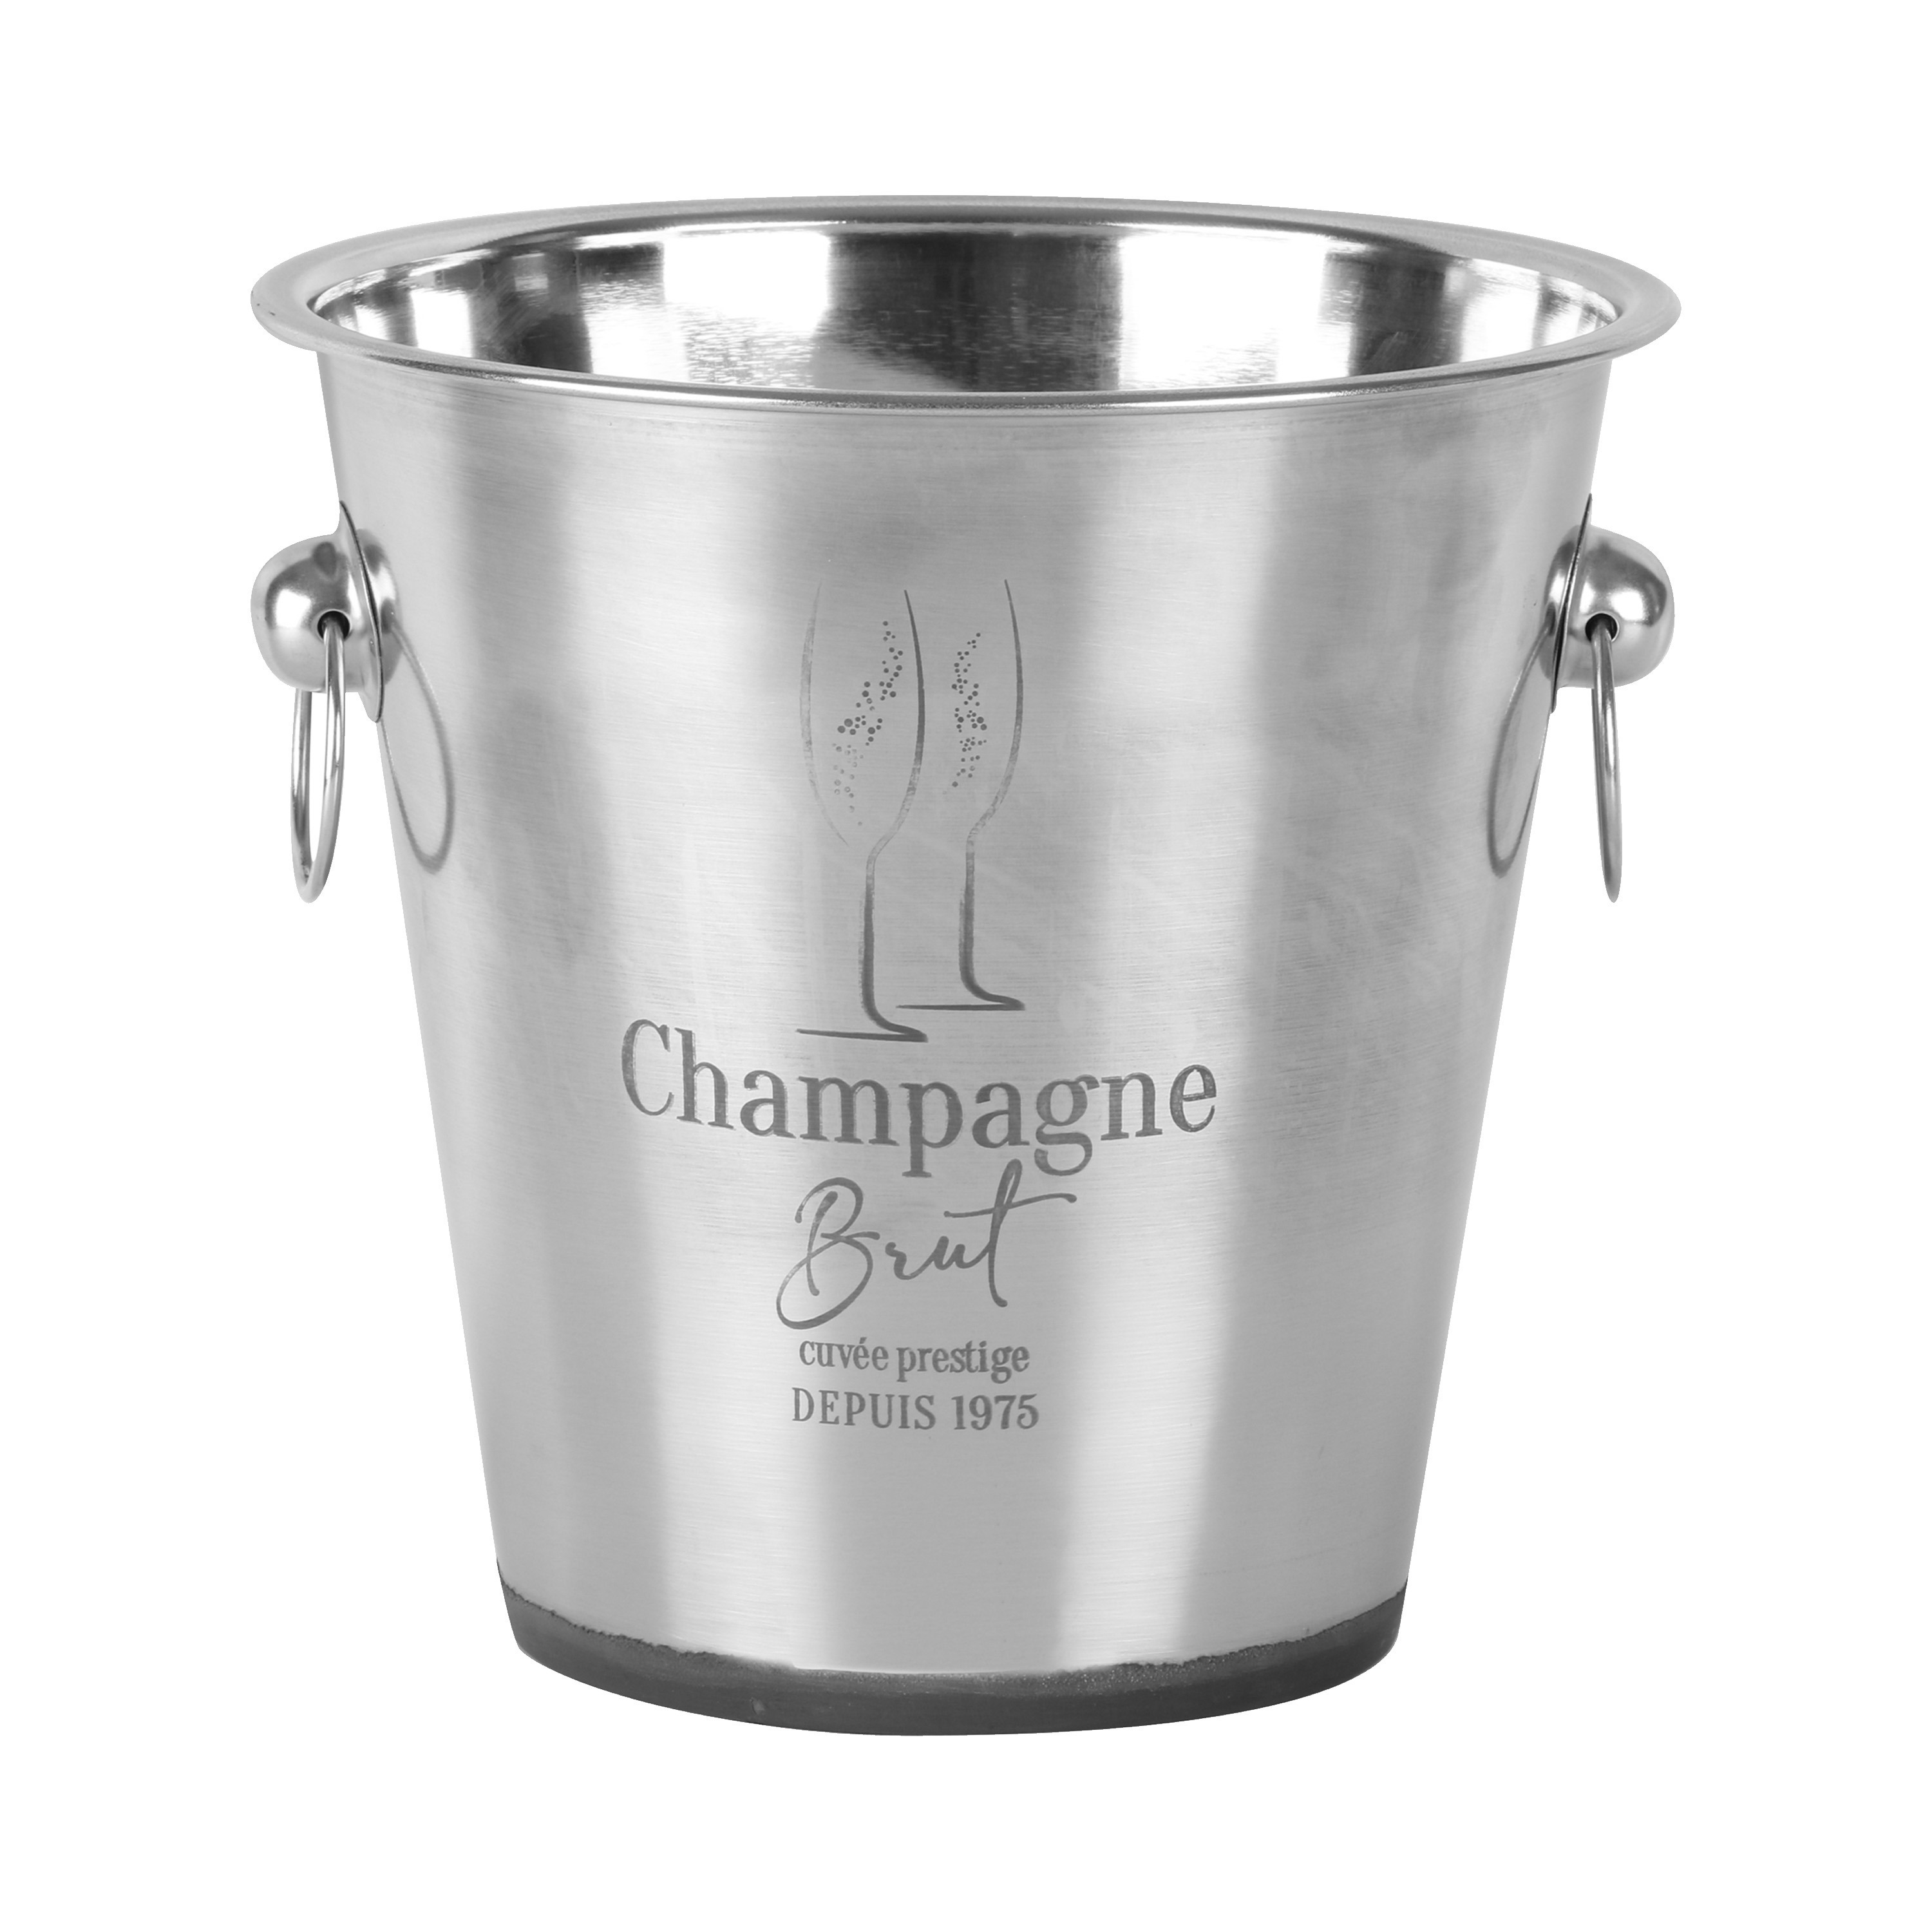 Urban Living Champagne & wijnfles koeler-ijsemmer zilver rvs 22 x 21 cm De luxe model